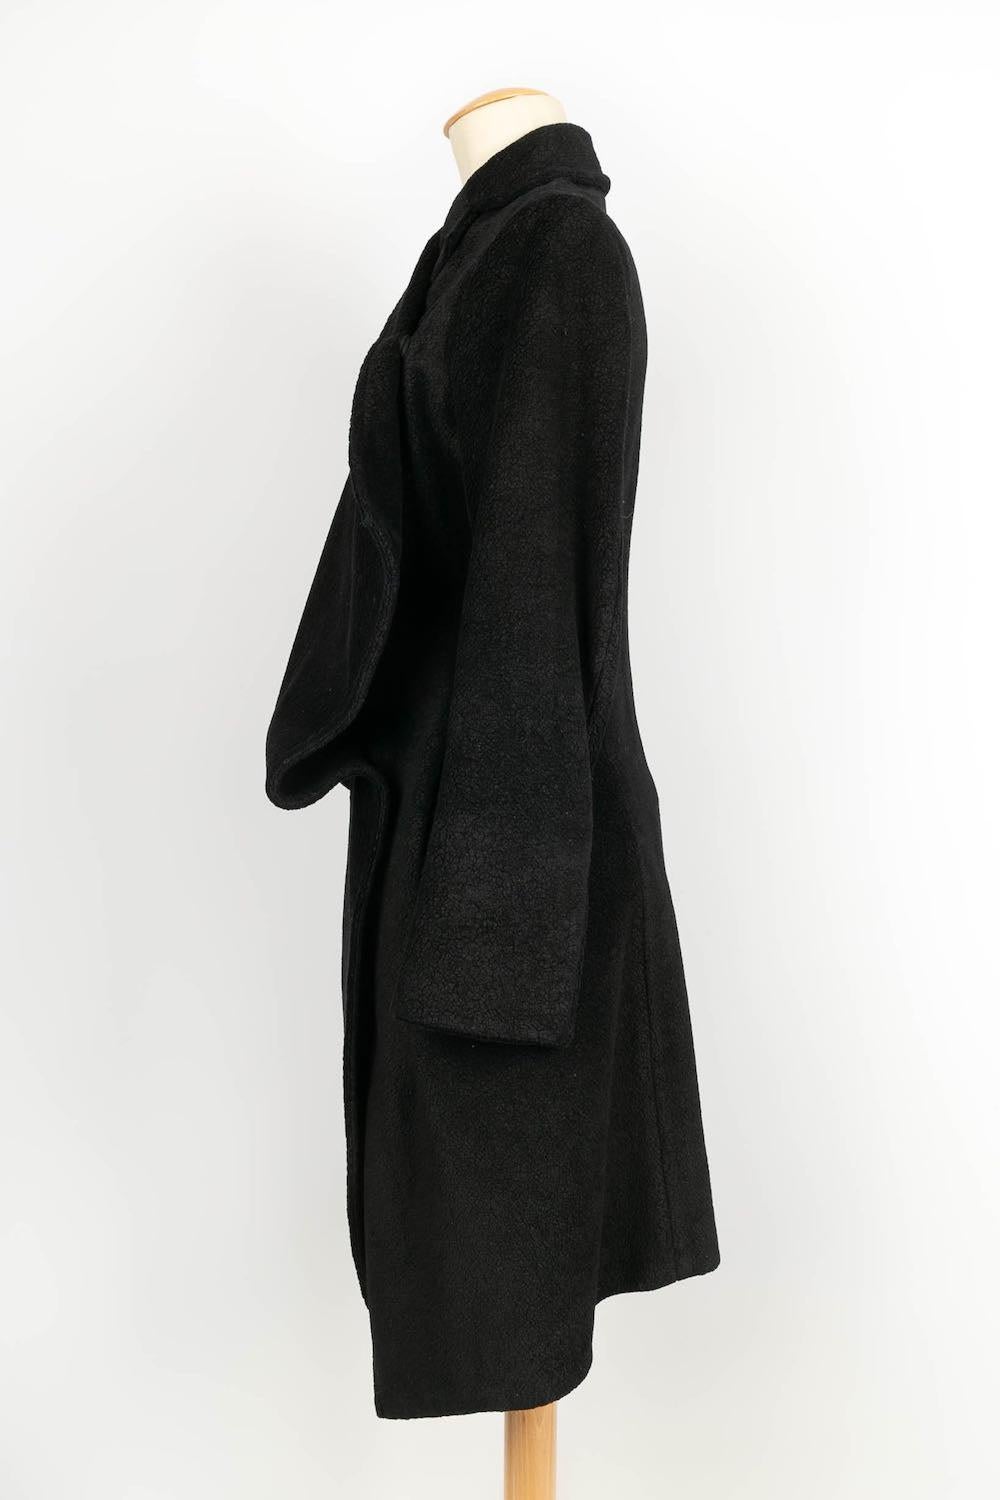 Peachoo + Krejberg Black Coat of Cotton In Excellent Condition For Sale In SAINT-OUEN-SUR-SEINE, FR